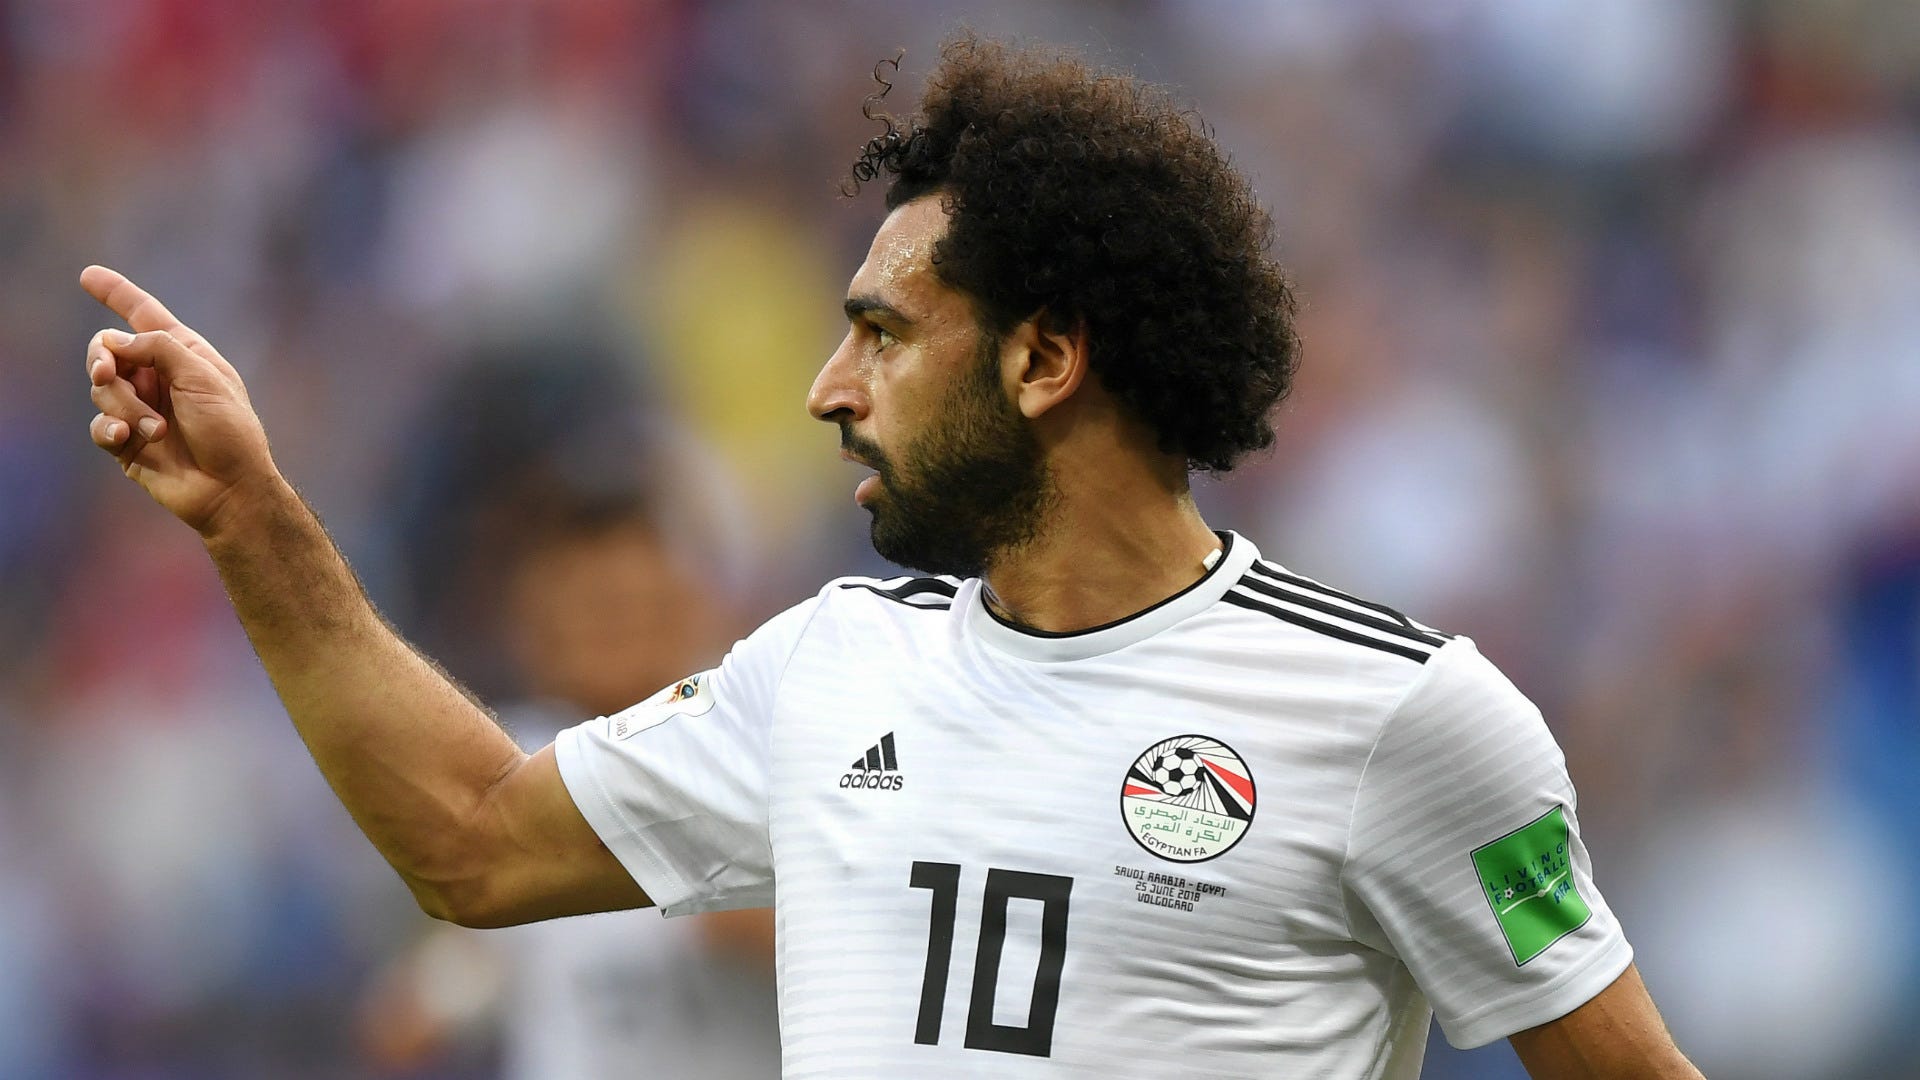 Mohamed Salah Egypt 2018 World Cup